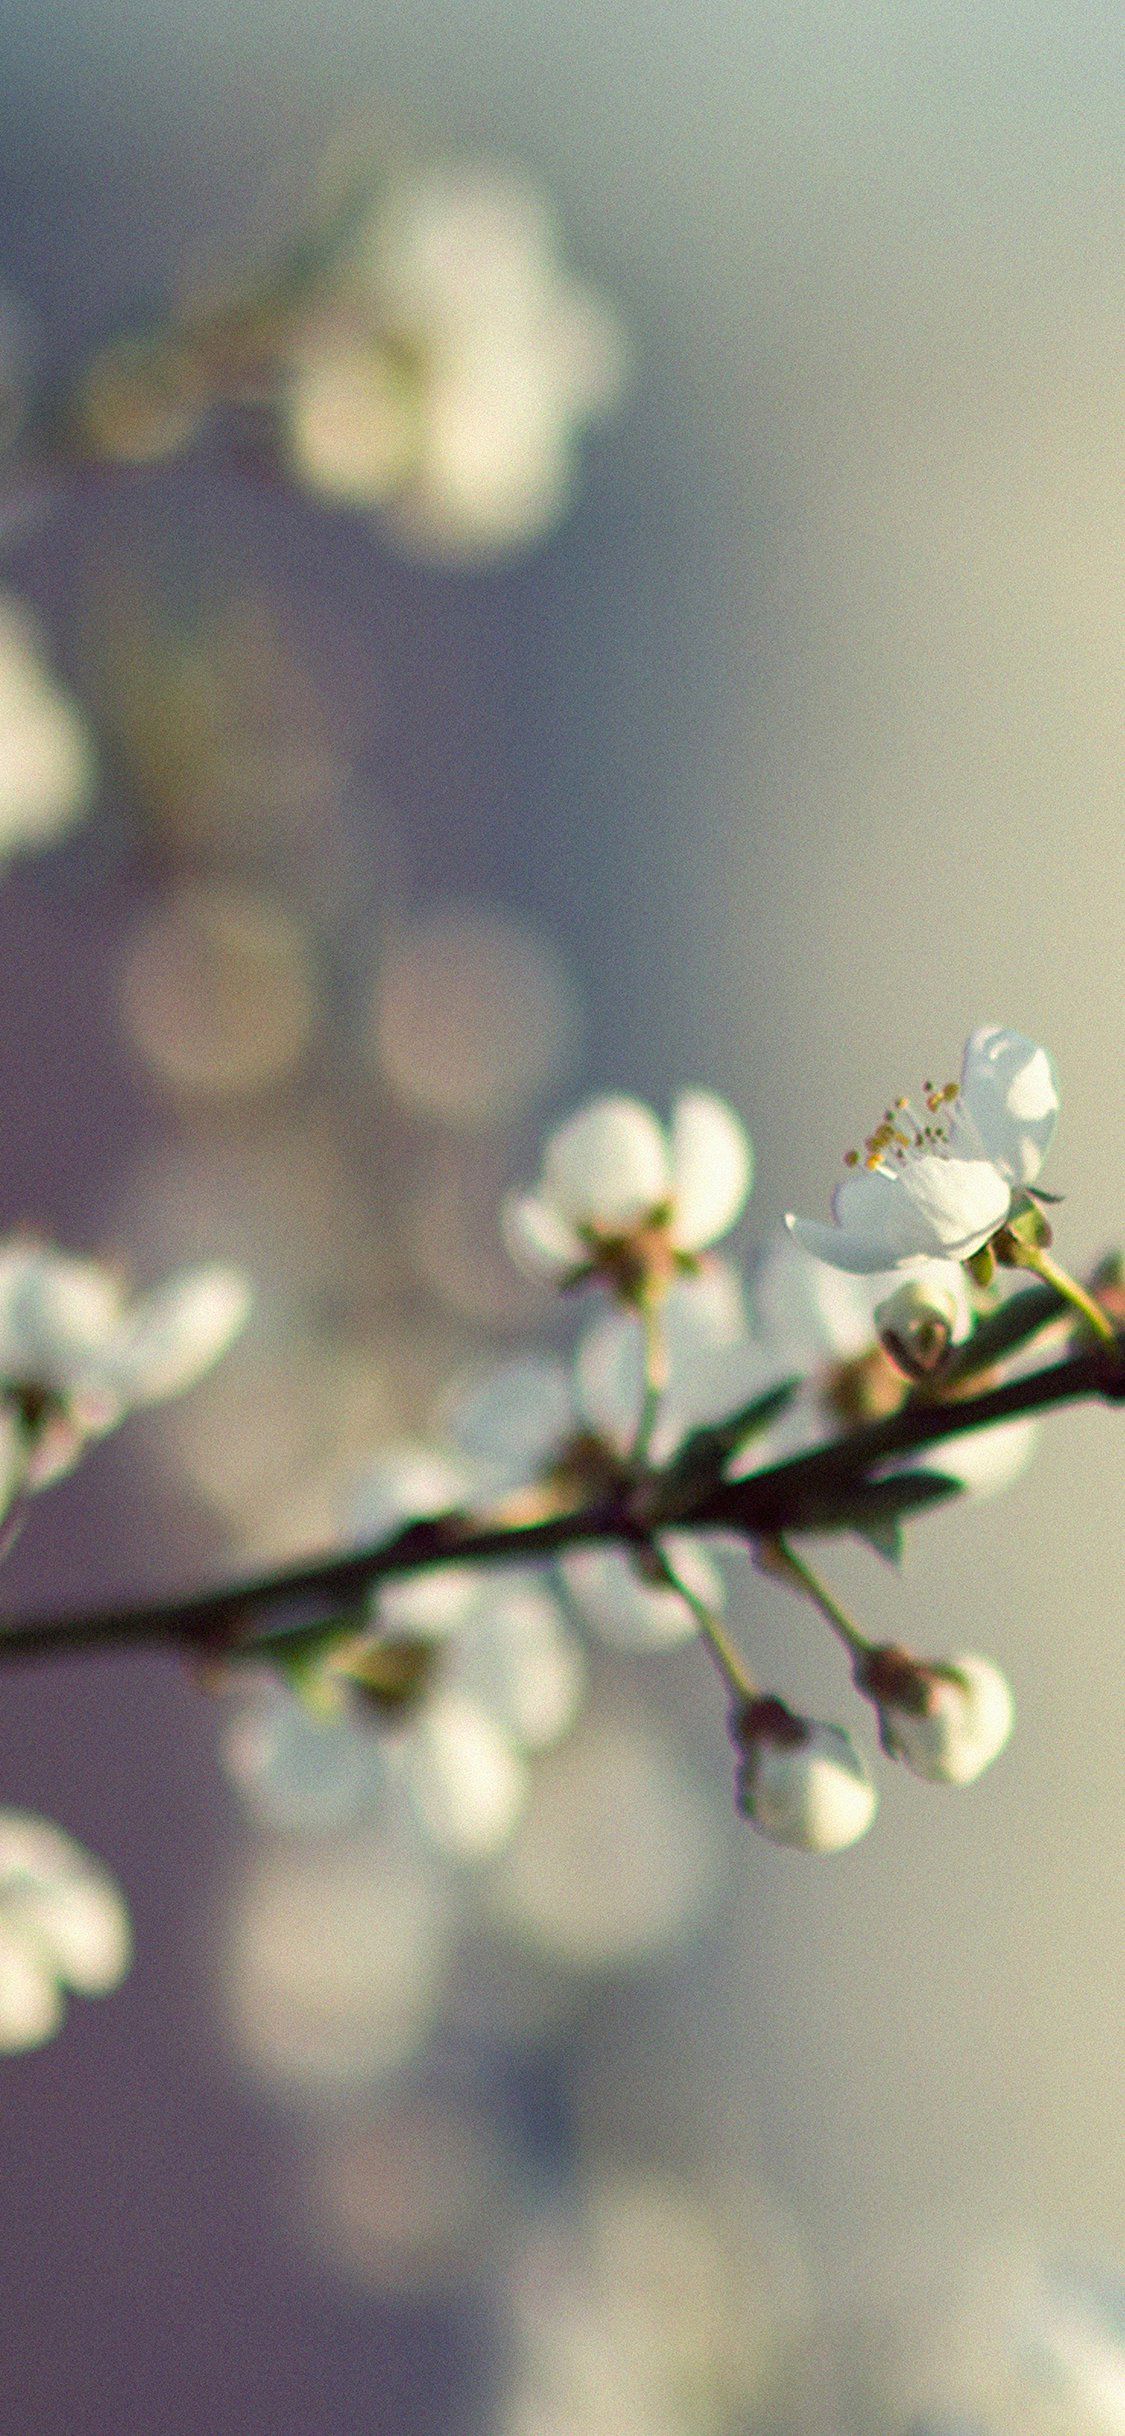 Spring flower bokeh iPhone X Wallpaper Free Download